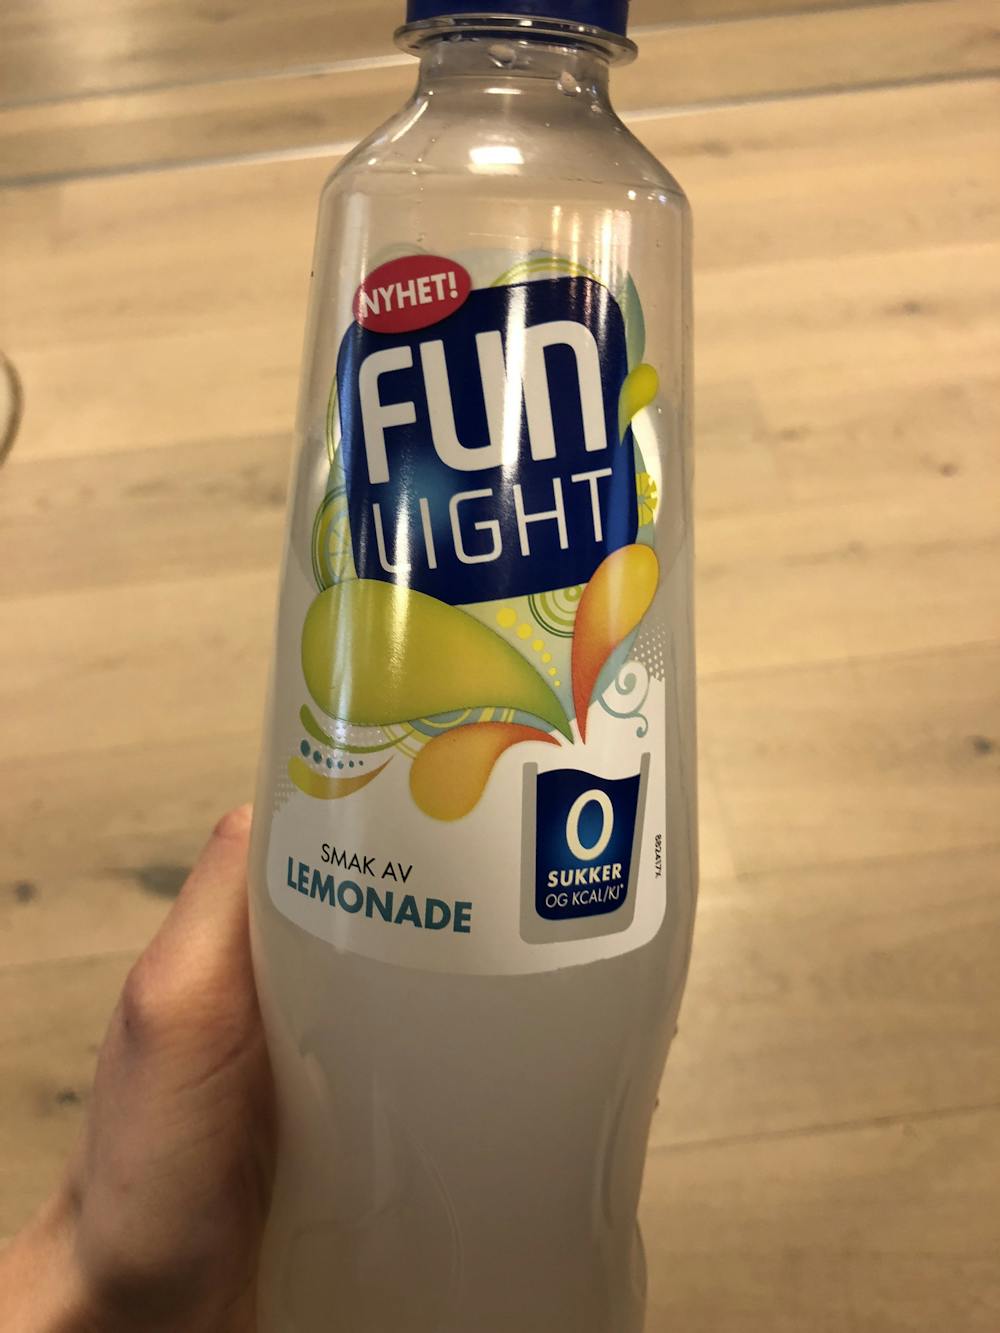 Smak av lemonade, Fun light